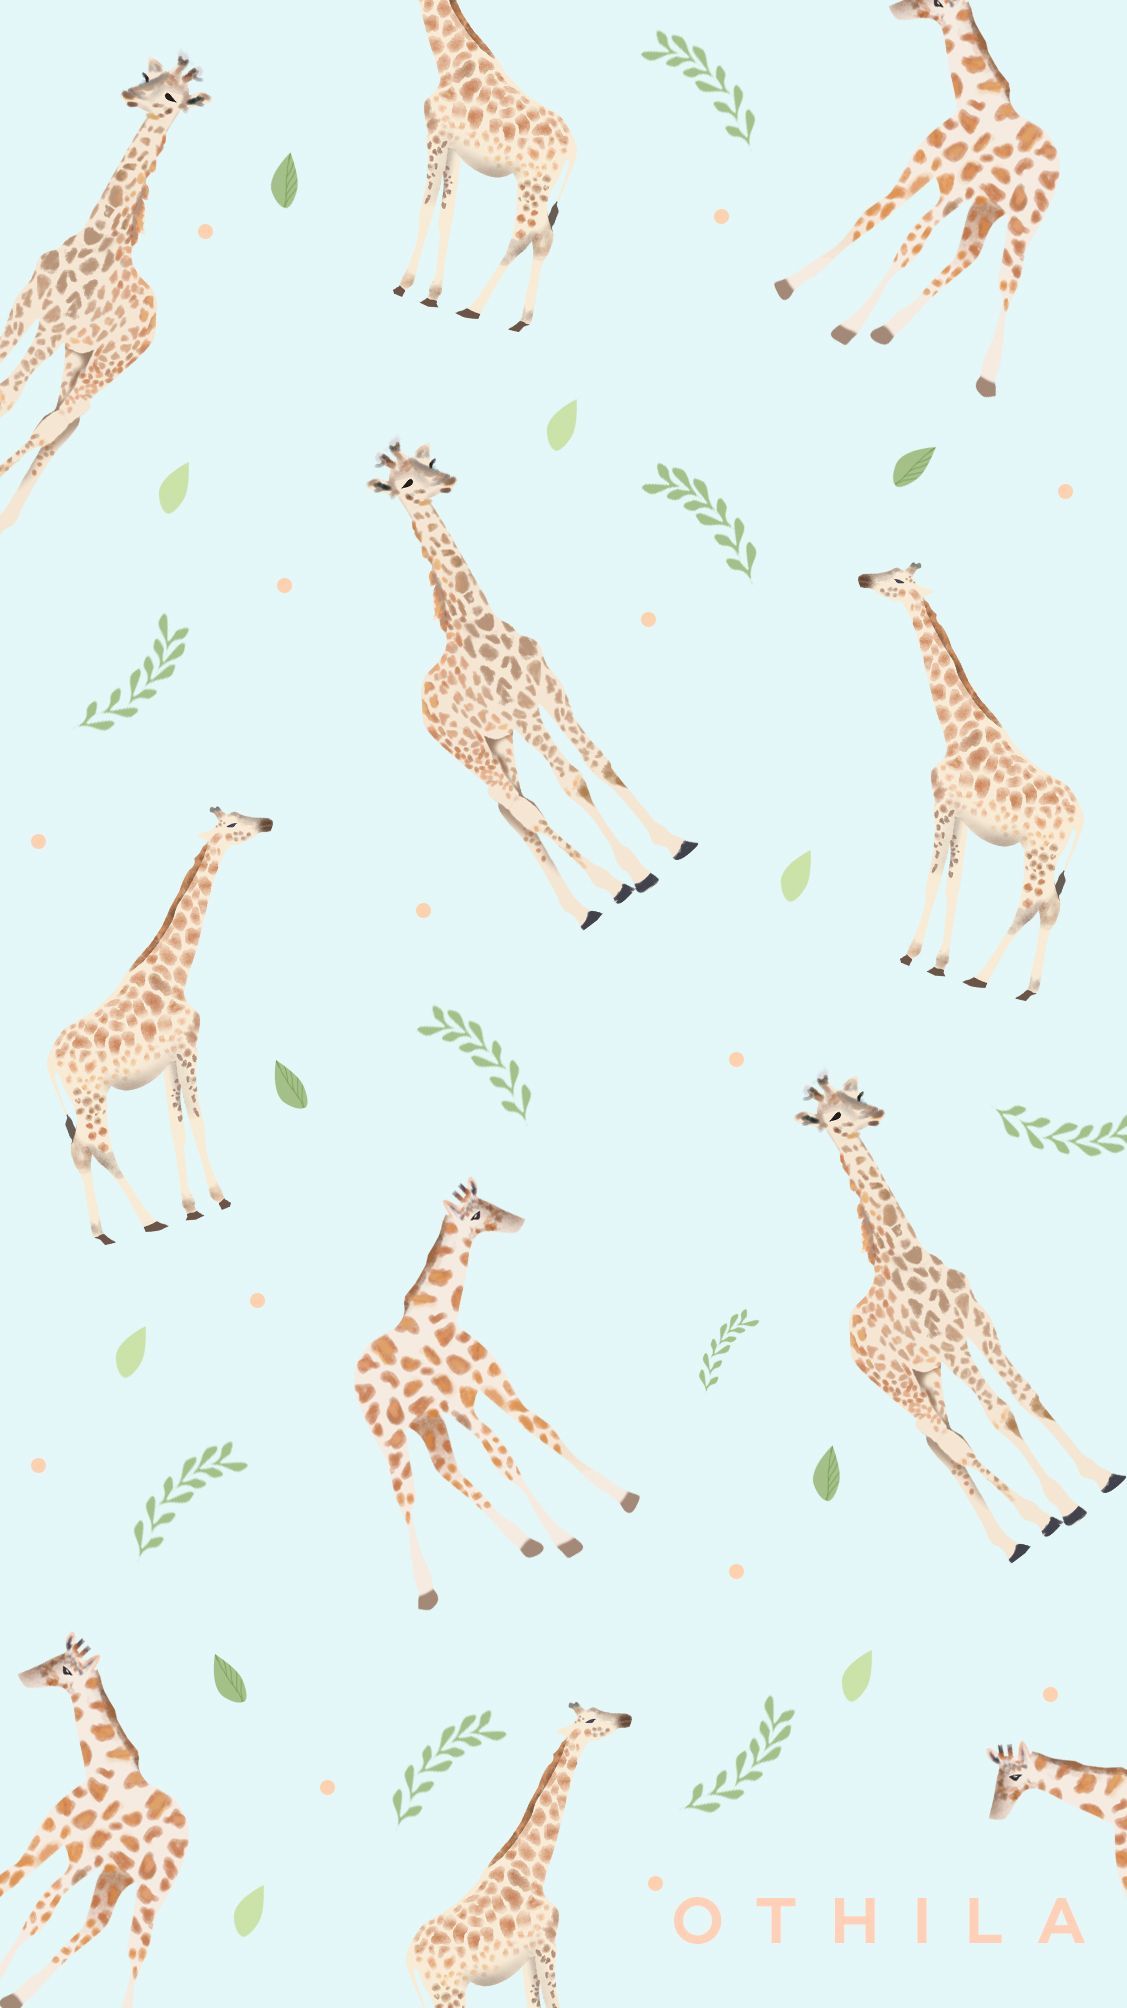  Giraffe Hintergrundbild 1127x2008. giraffe #animals #flowers #nature #blue #wallpaper #design. Phone wallpaper patterns, Apple watch wallpaper, Graphic wallpaper